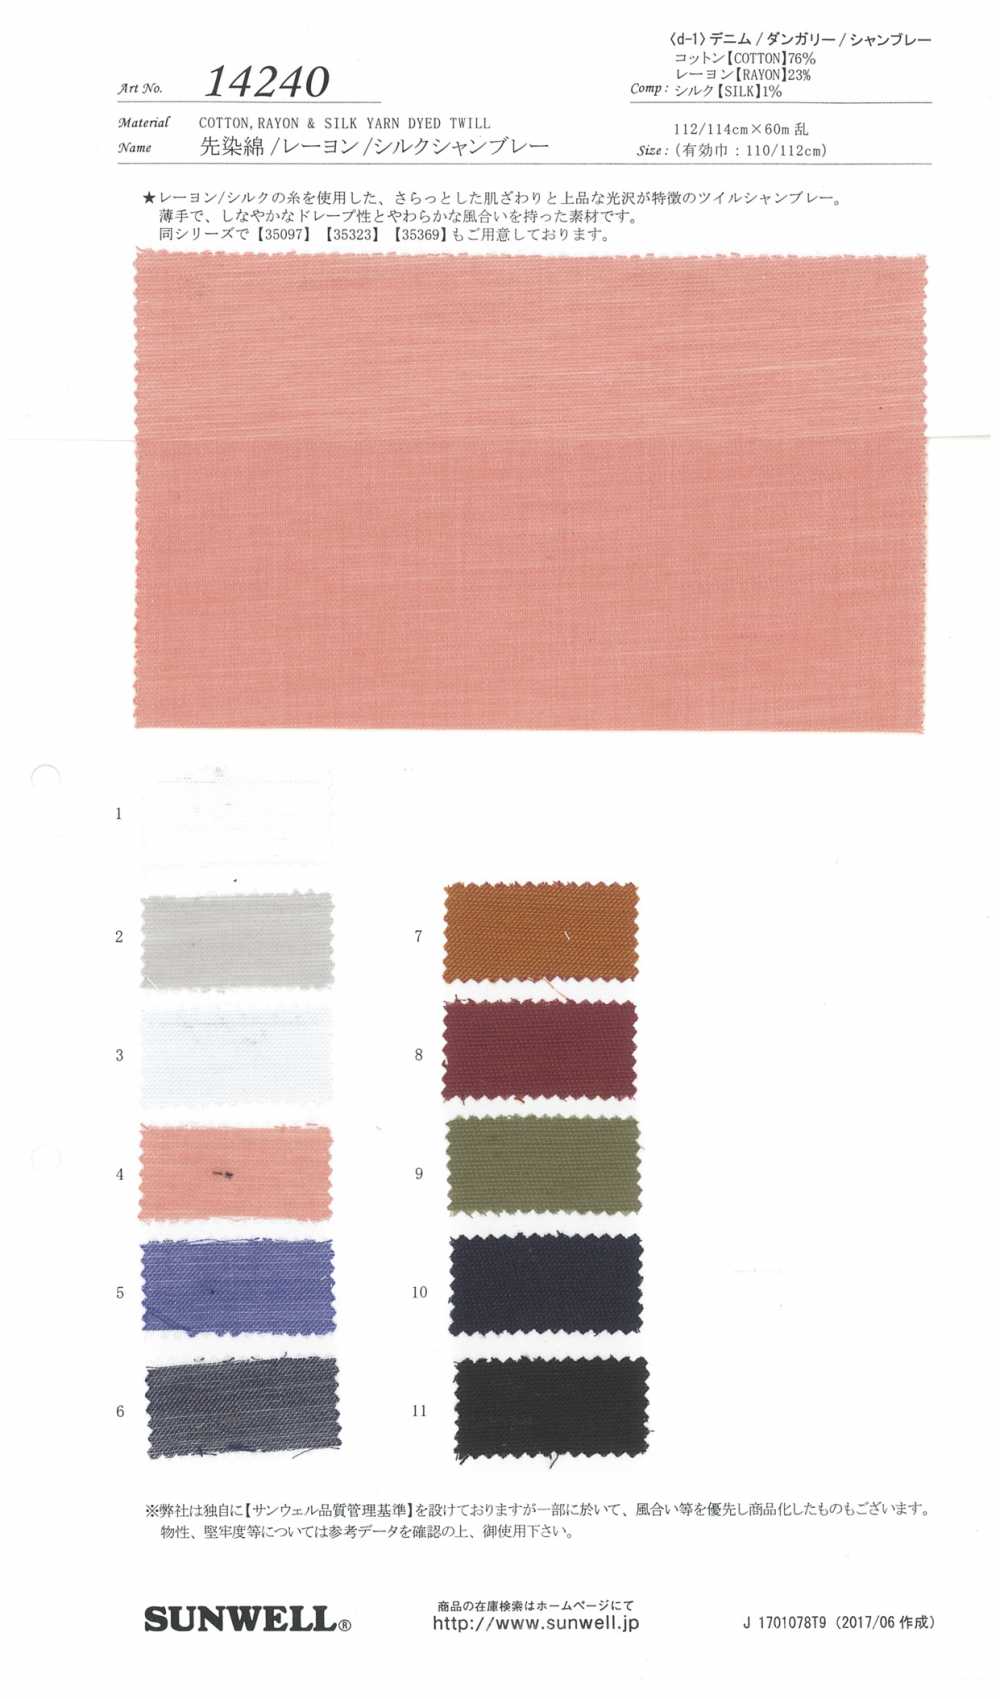 14240 Yarn-dyed Cotton / Rayon / Silk Chambray[Textile / Fabric] SUNWELL